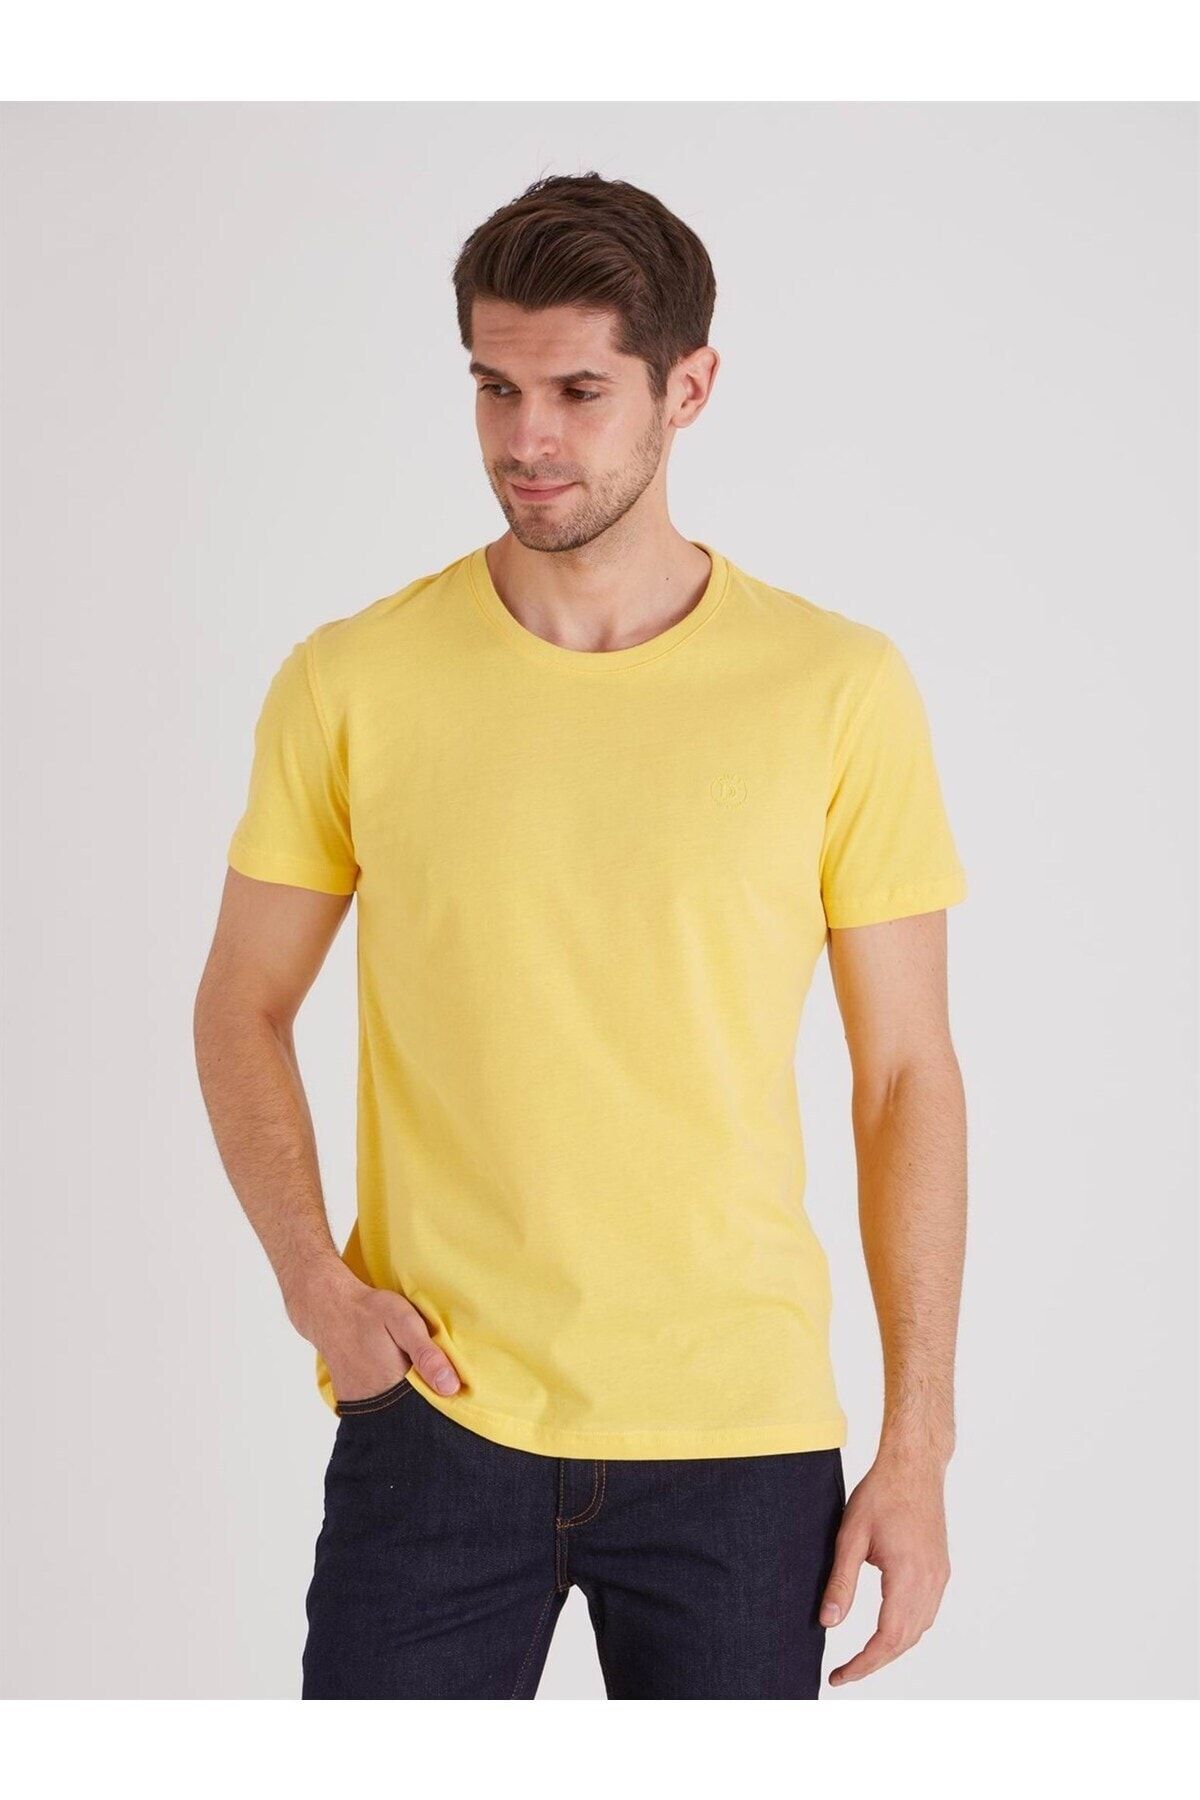 تی شرت مردانه بدون جیب براش دار زرد دوفی Dufy (برند ترکیه)